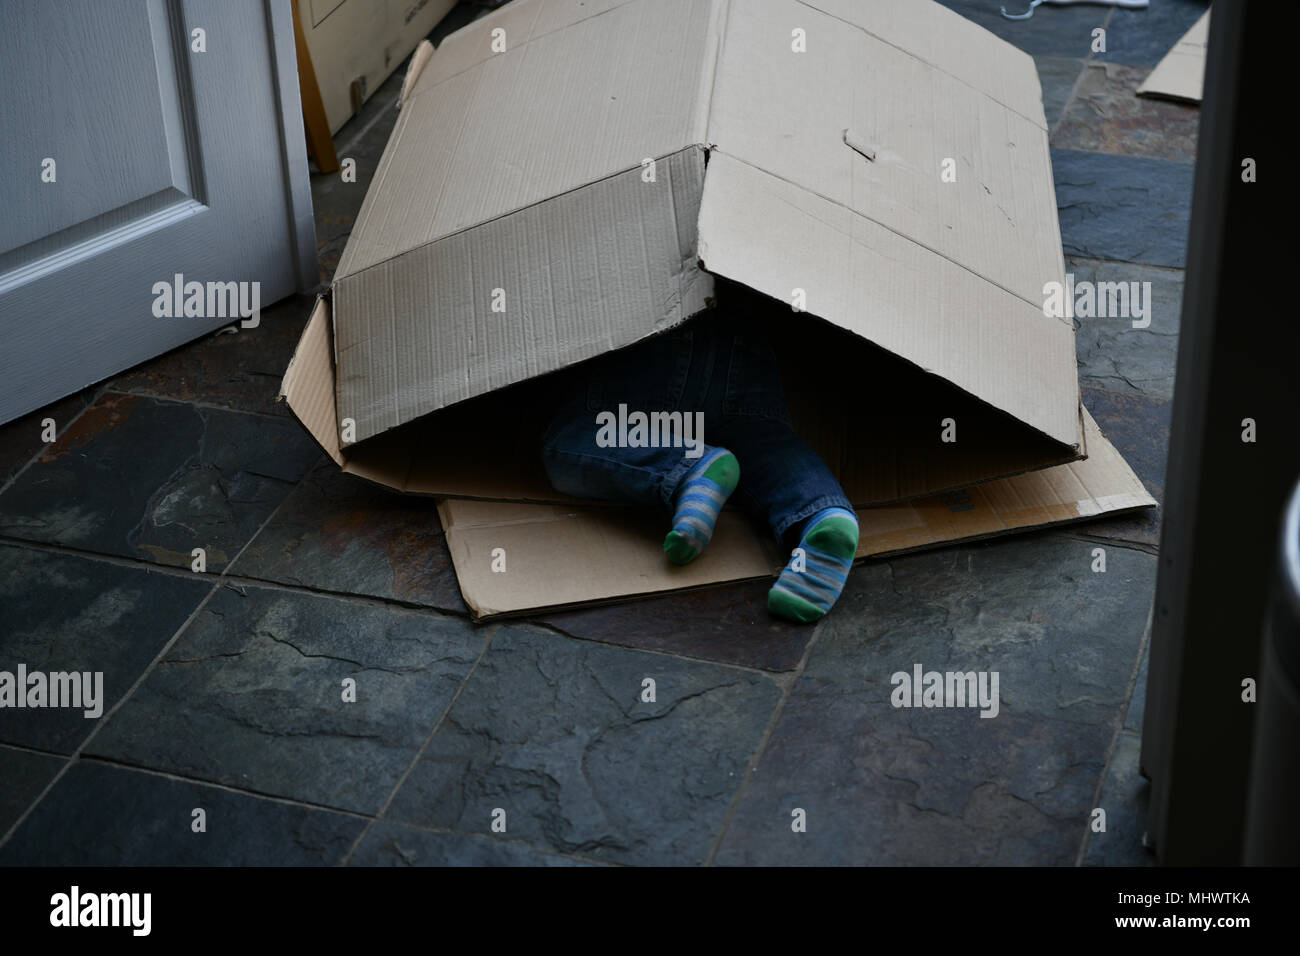 Les enfants de se cacher en boîte carton whilst moving house Banque D'Images